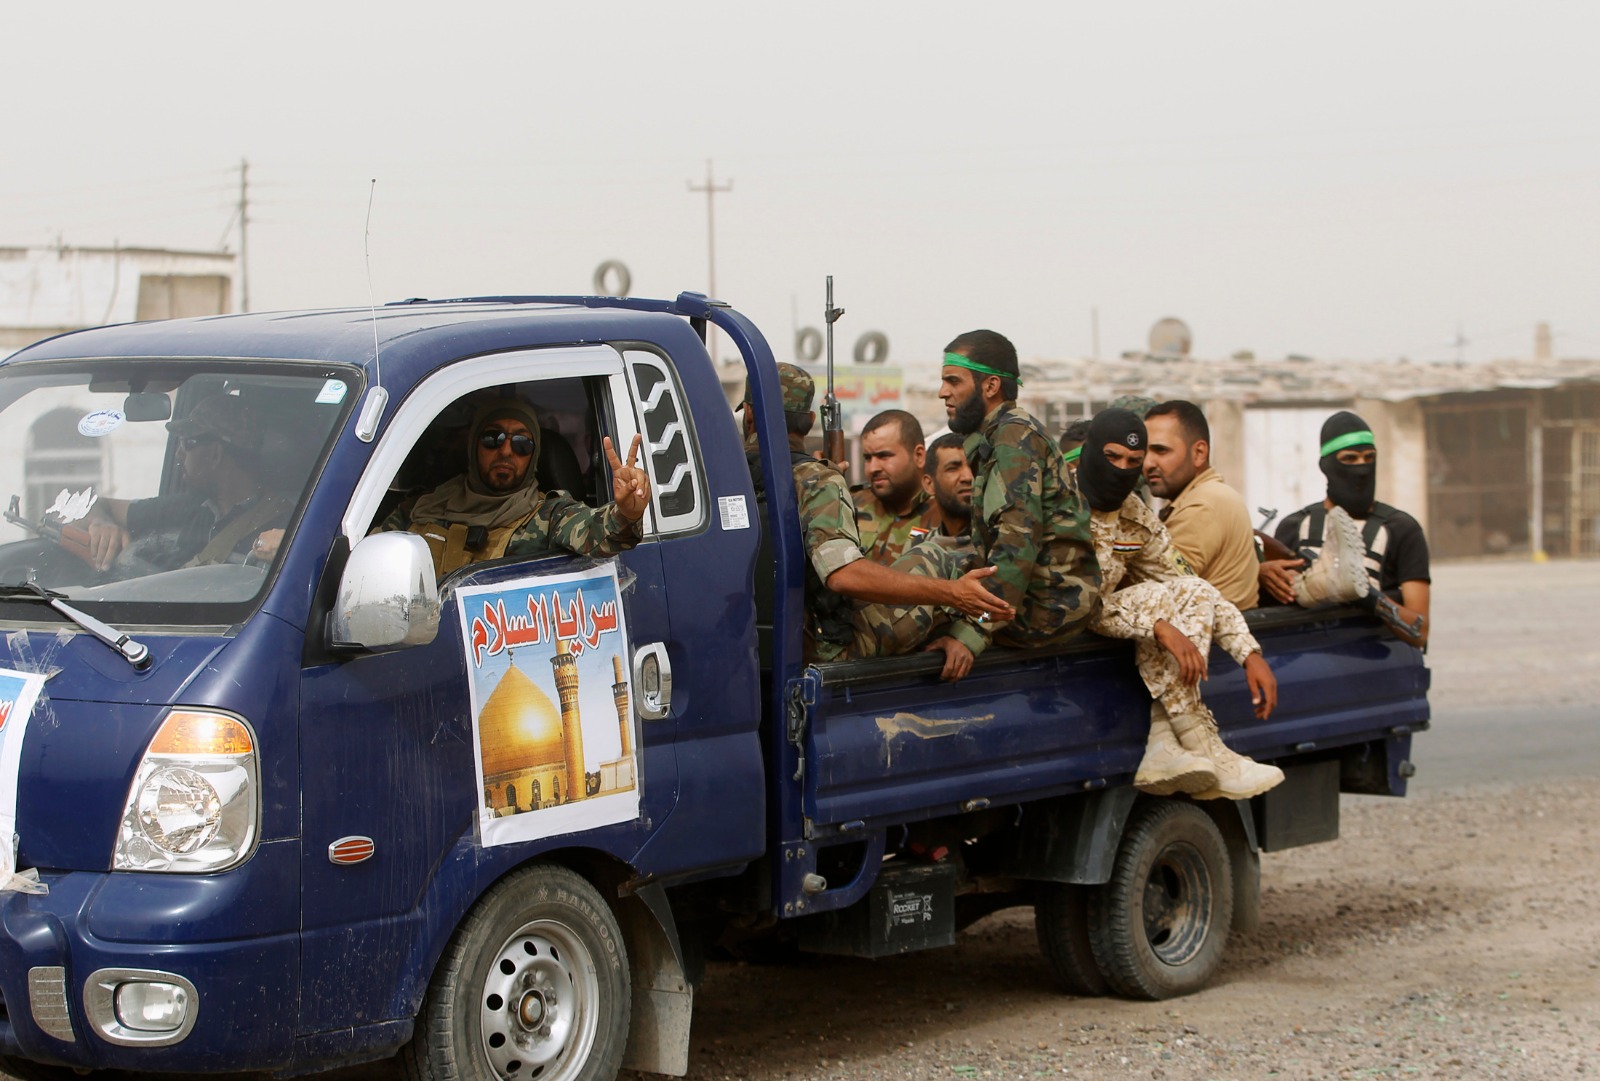 مقاتلون من 'كتائب السلام' التابعة للتيار الصدري بزعامة مقتدى الصدر في سامراء- 13 يوليو 2014